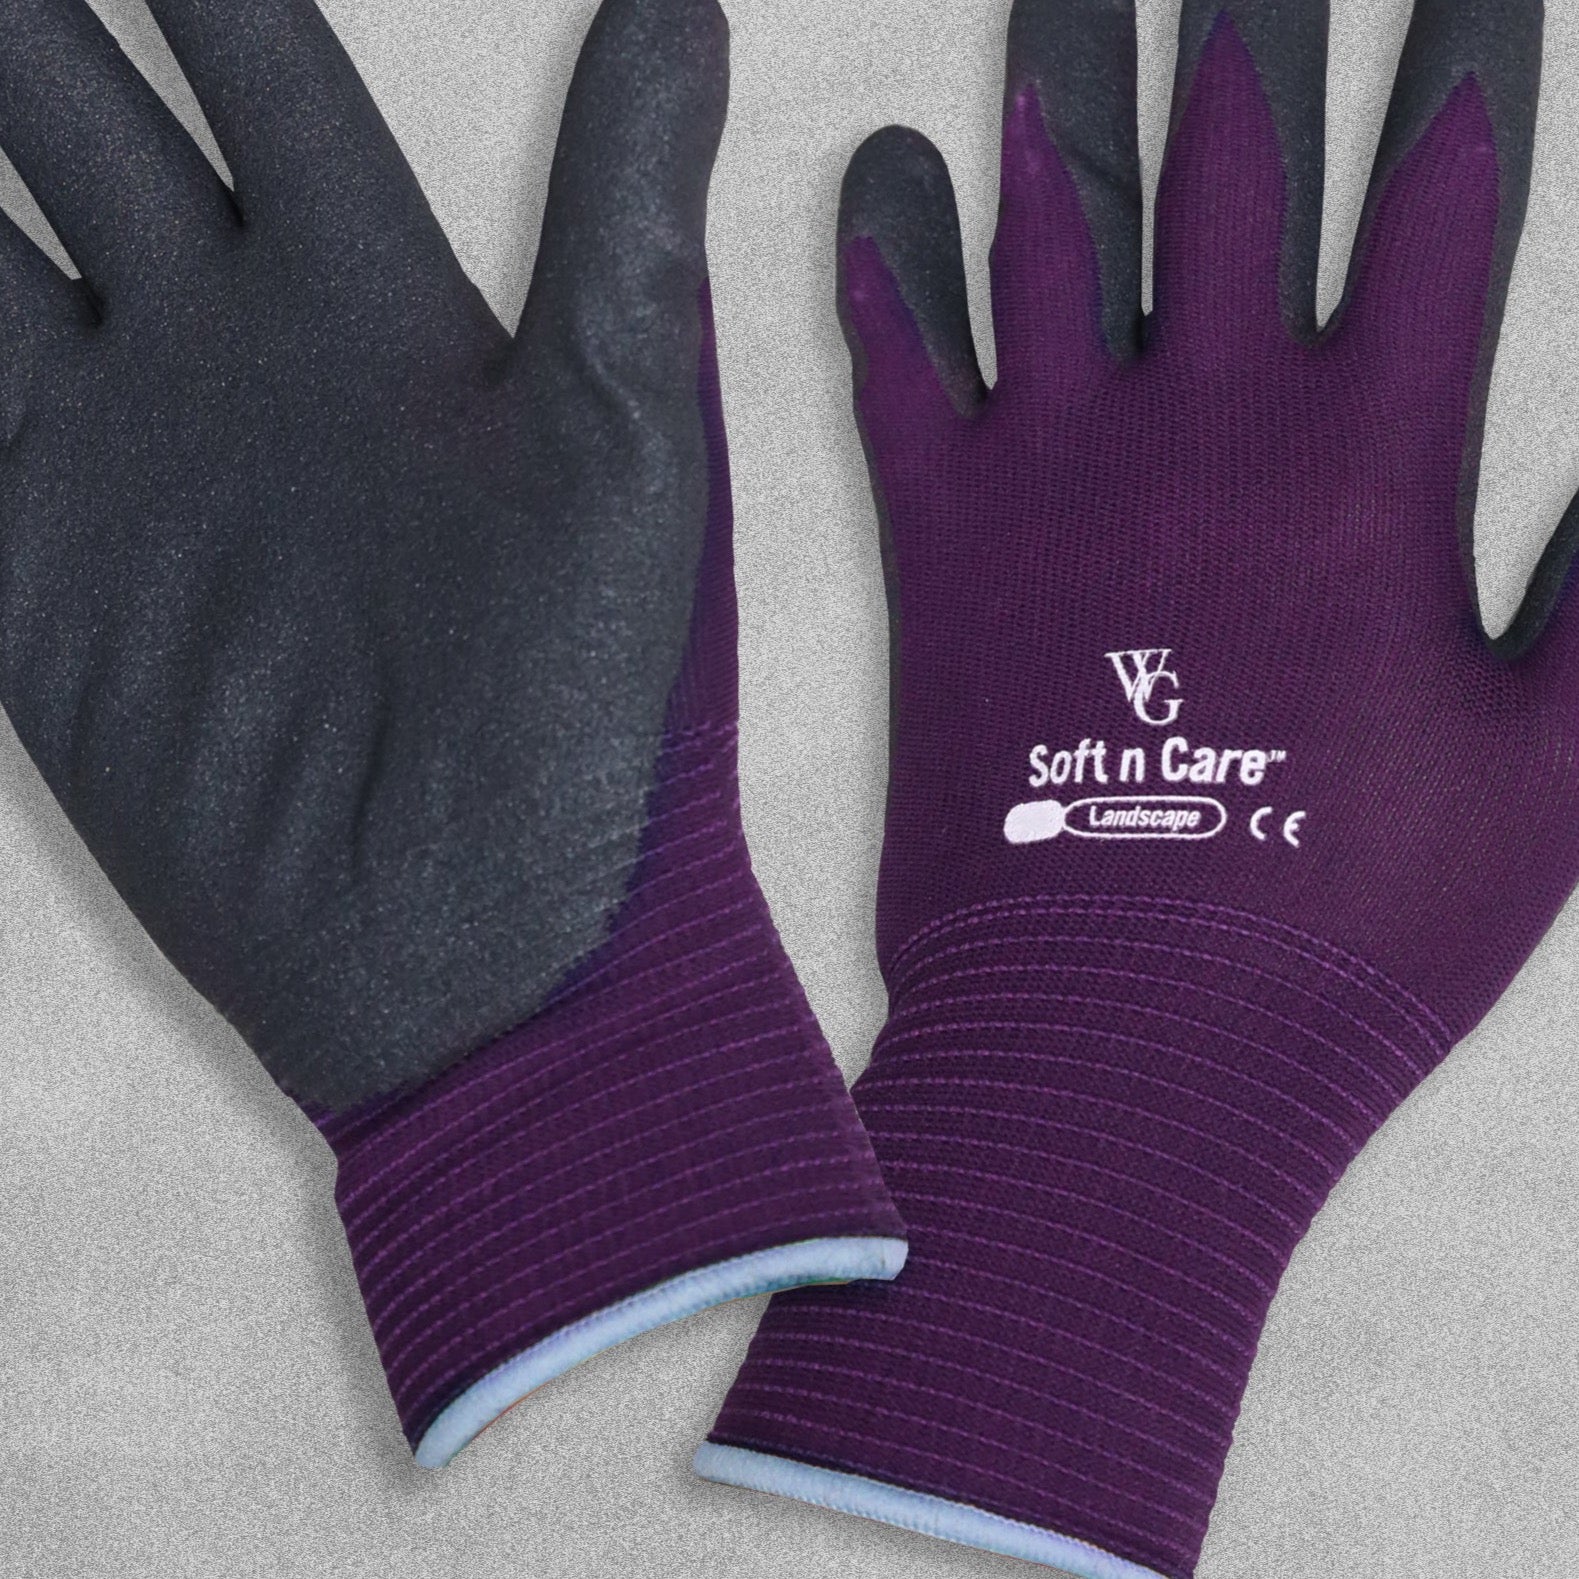 Soft n Care Garden gloves - purple